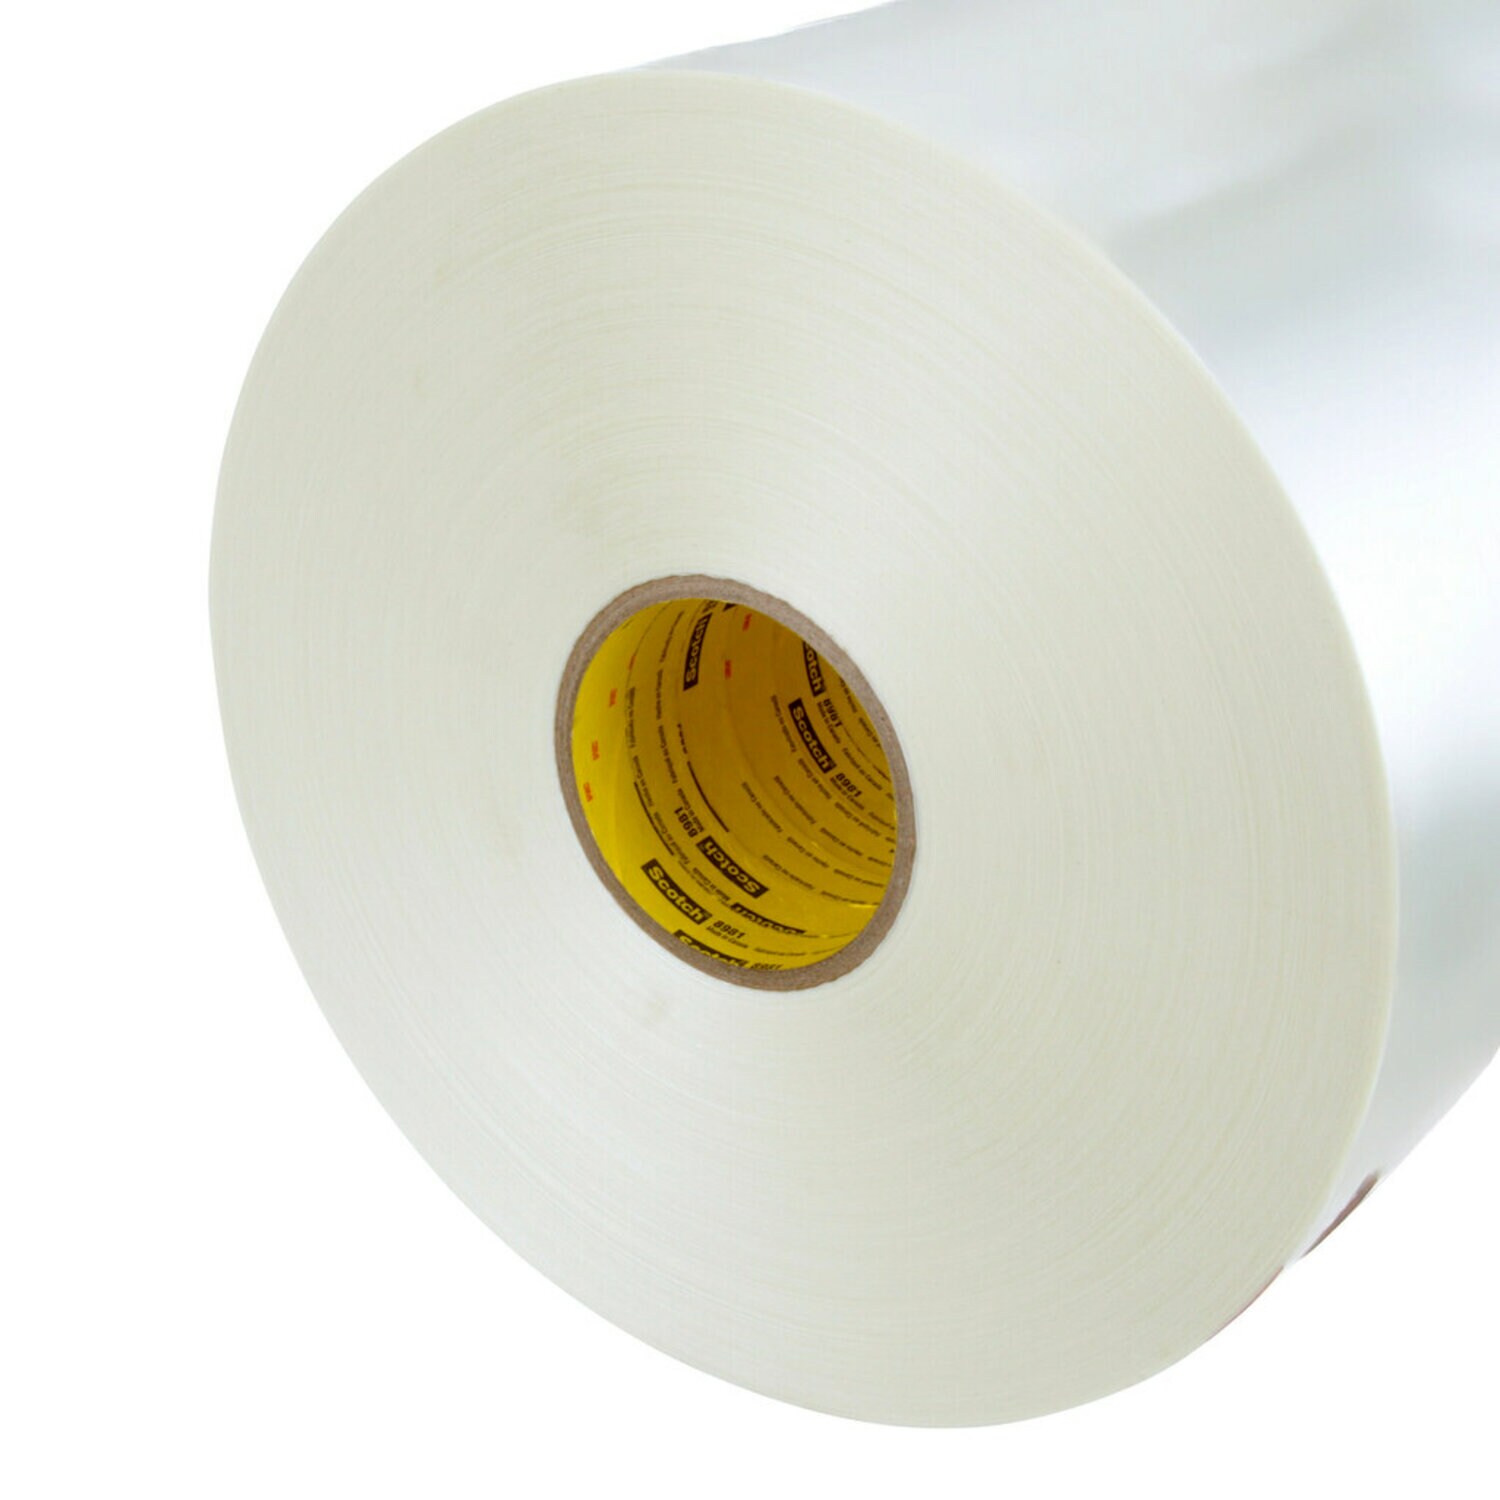 7000059894 - Scotch Filament Tape 8981, Clear, 12 in x 360 yd, 6.6 mil, 1 roll per
case